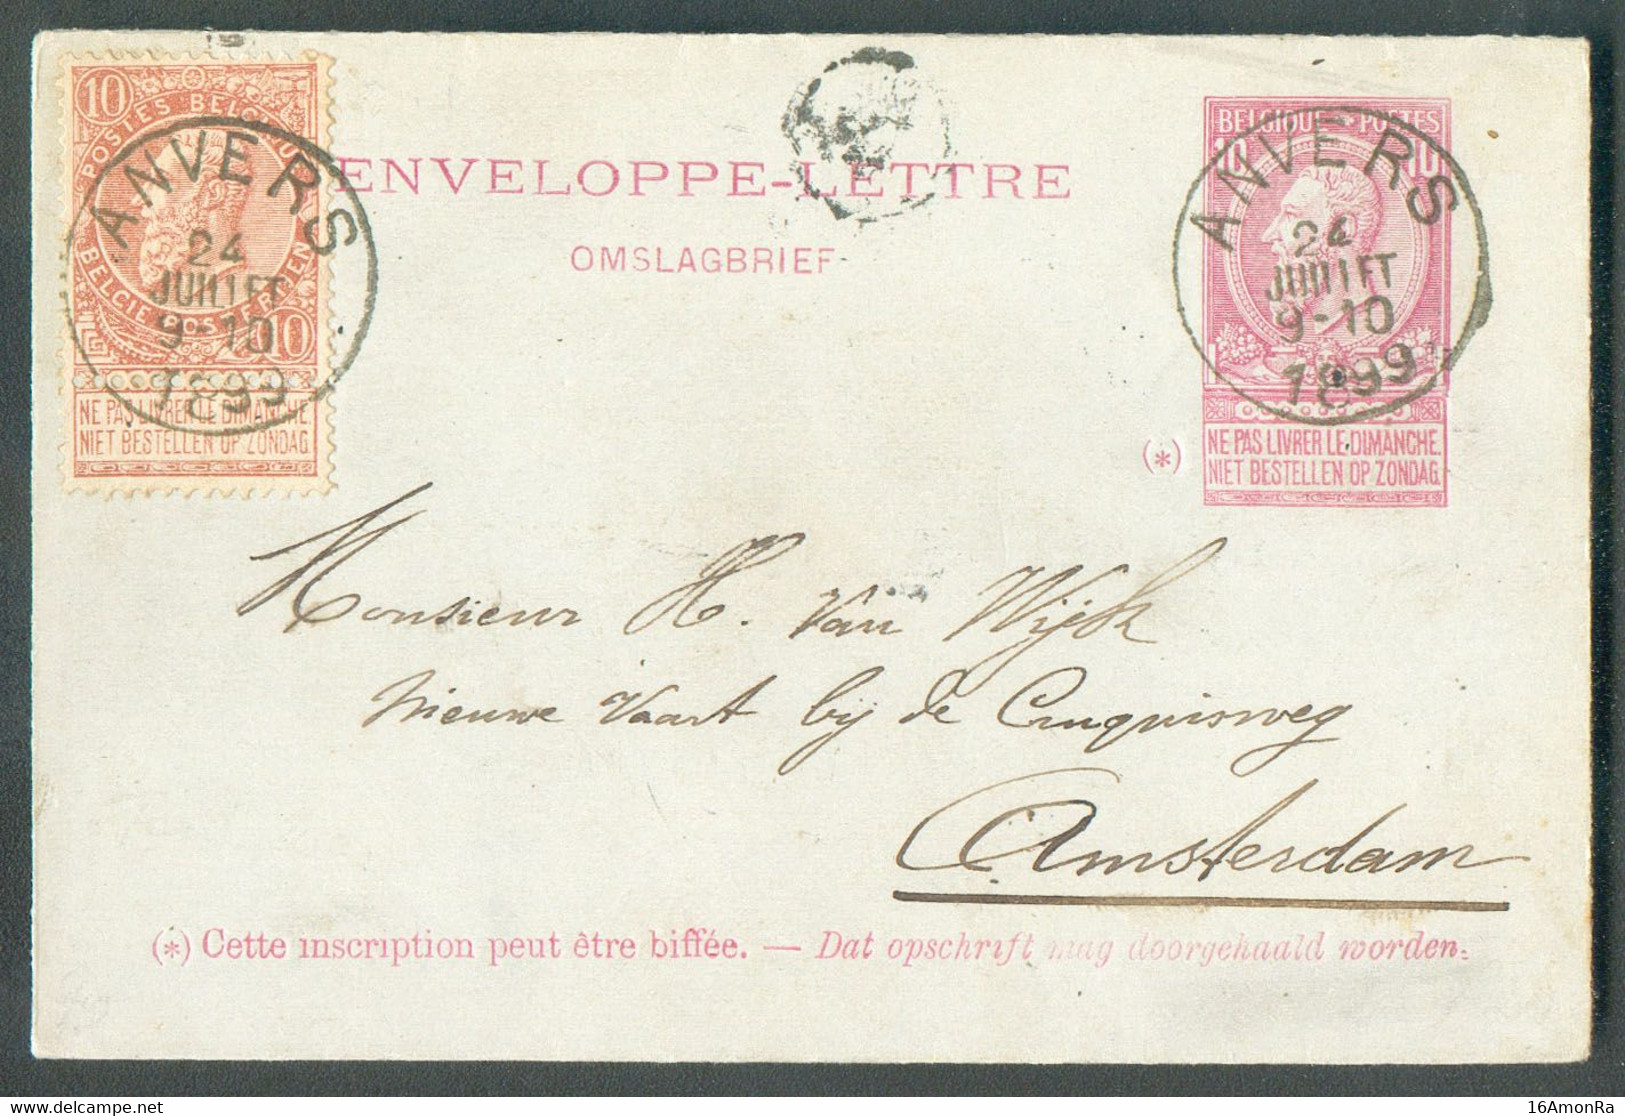 E.P. Enveloppe-lettre 10c. Fine Barbe + Tp 10 Centimes Obl. Sc ANVERS Du 24 Juillet 1899 Vers Amsterdam - 20335 - Briefumschläge